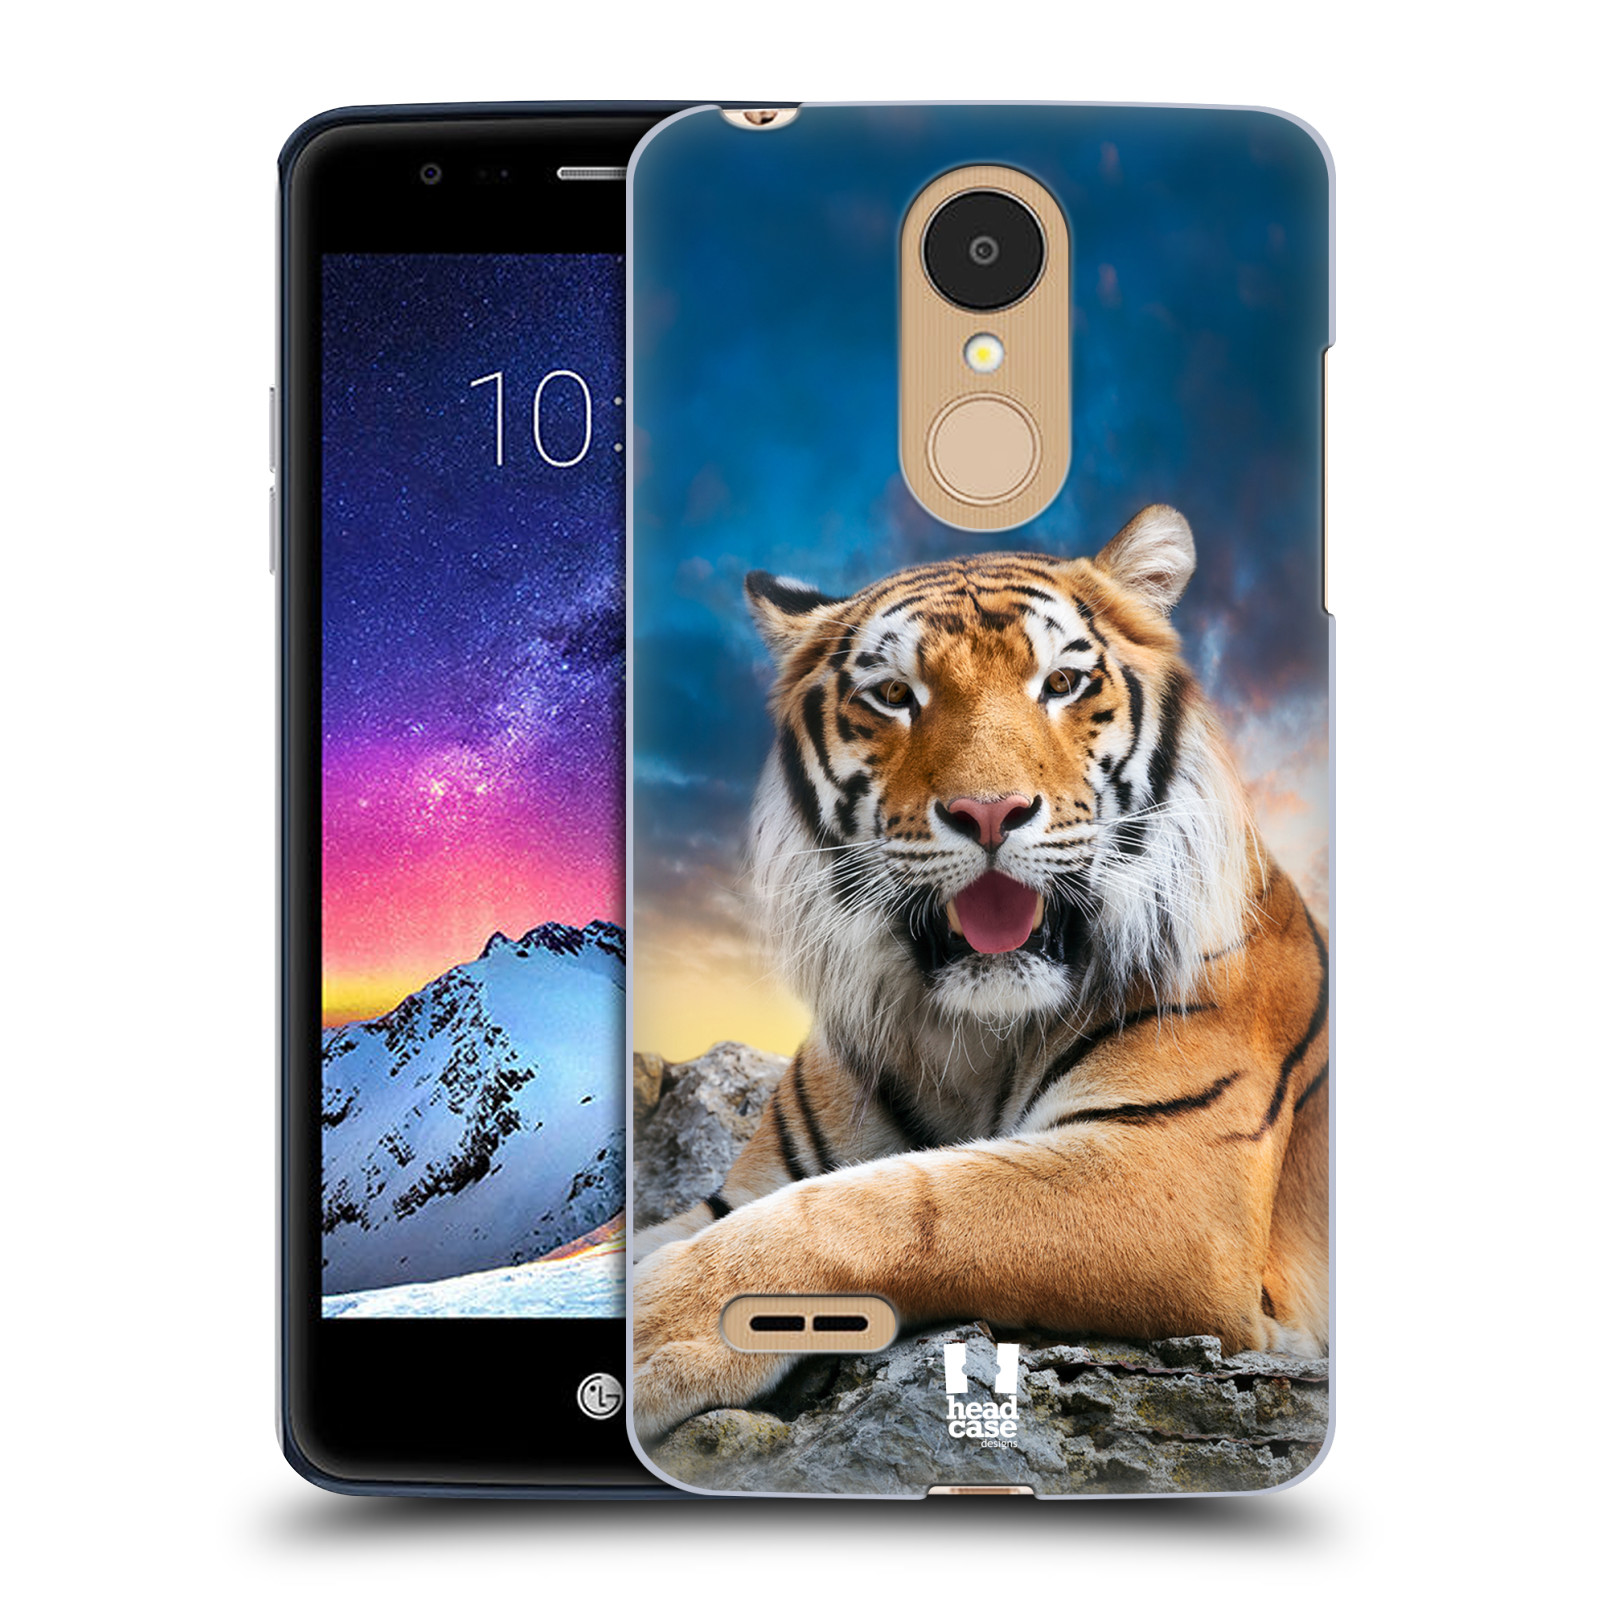  HEAD CASE plastový obal na mobil LG K9 / K8 2018 vzor Divočina, Divoký život a zvířata foto TYGR A NEBE